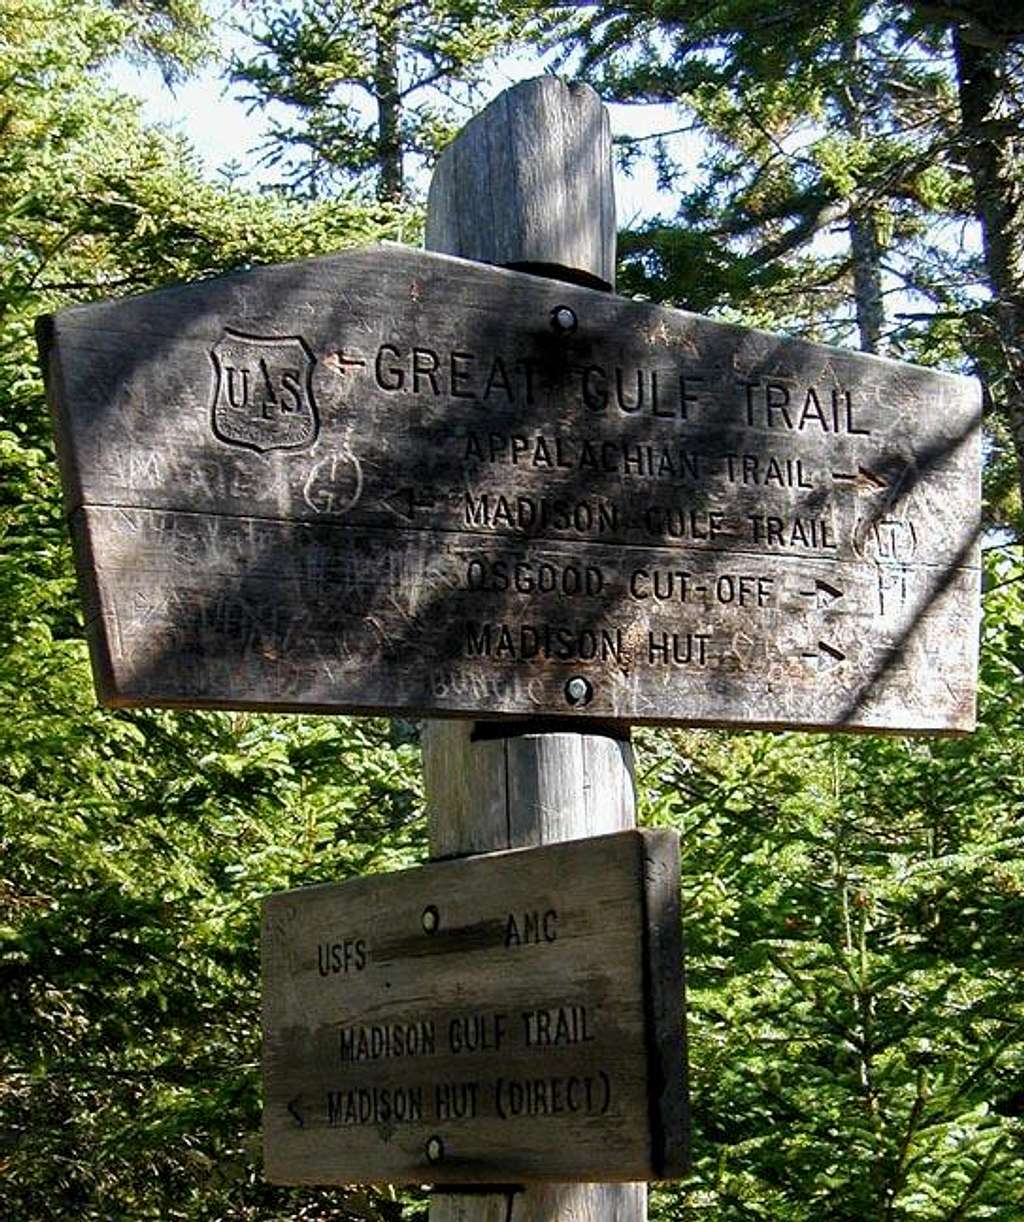 Madison Gulf Trail sign